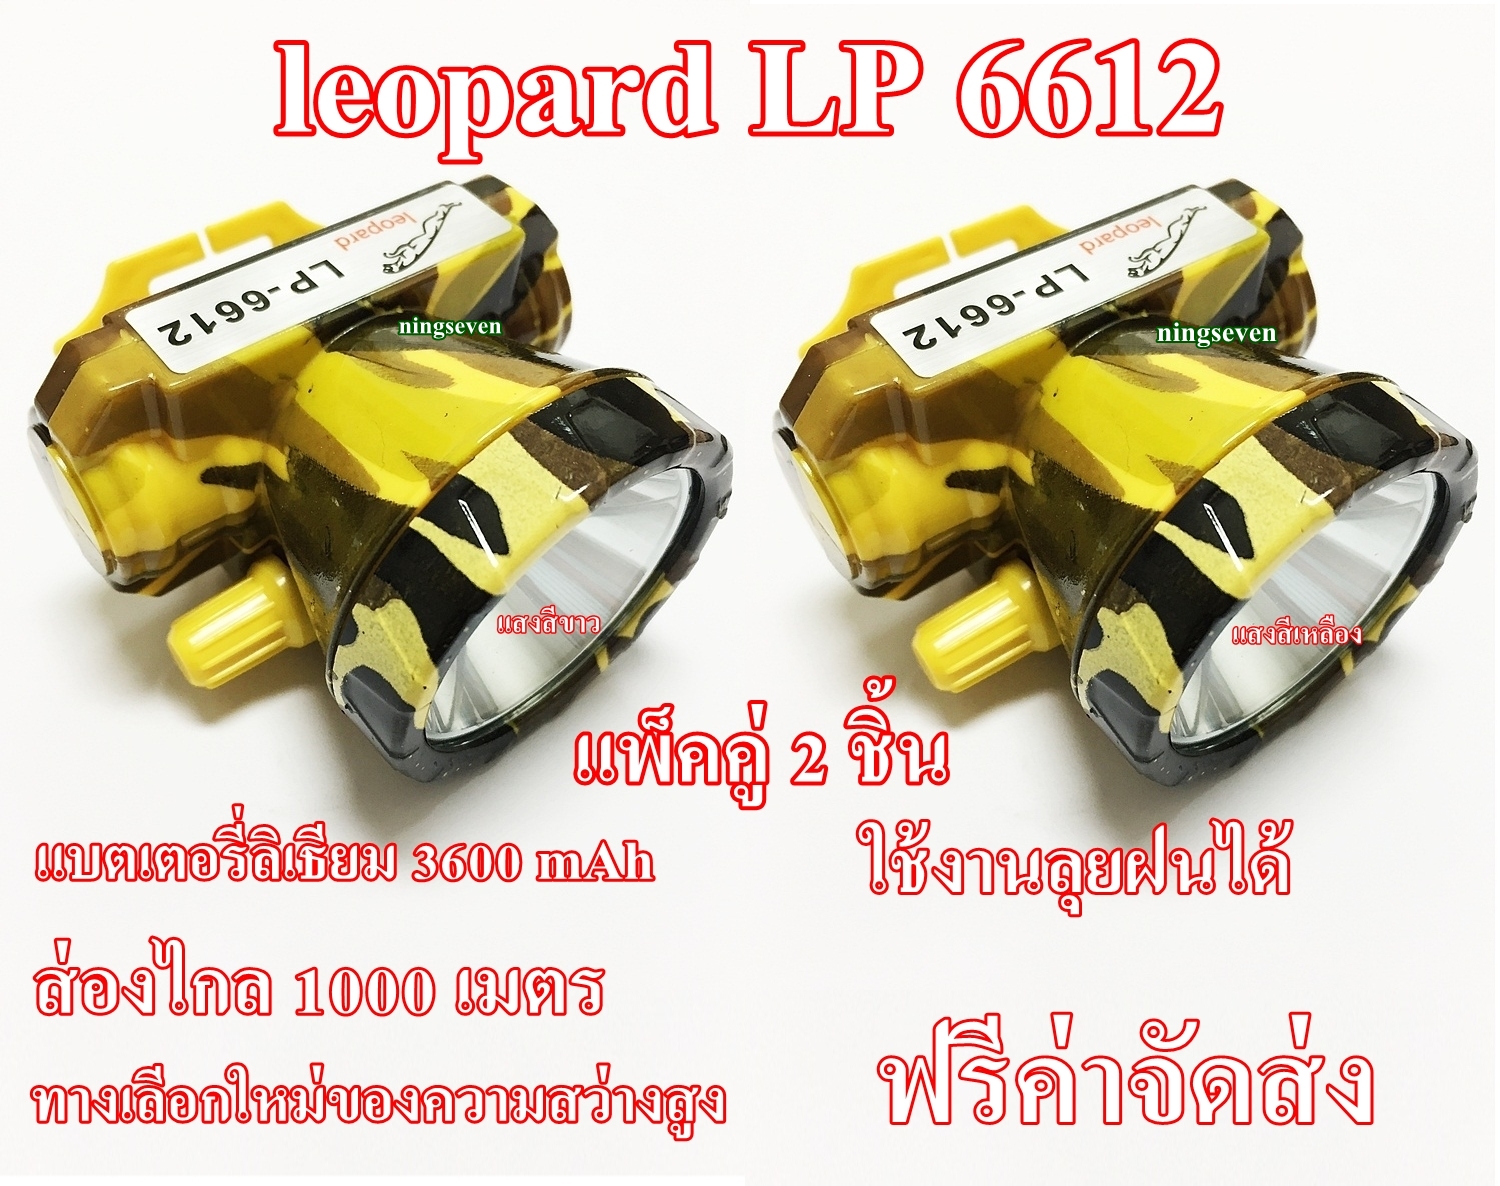 (แพ็คคู่ 2 ชิ้น) (แสงสีขาว+แสงสีเหลือง) ไฟฉายคาดหัว ไฟฉายคาดศรีษะ ไฟฉายแรงสูง ตราช้าง ตราเสือ รุ่น leopard LP-6612 มีแสงไฟสีเหลือง สีขาว ลุยน้ำ ลุยฝน แสงพุ่งไกล มากกว่า 1000 เมตร แบตเตอรี่ลิเธียม 3600 mAh หลอดชิพ LED ความสว่างสูง